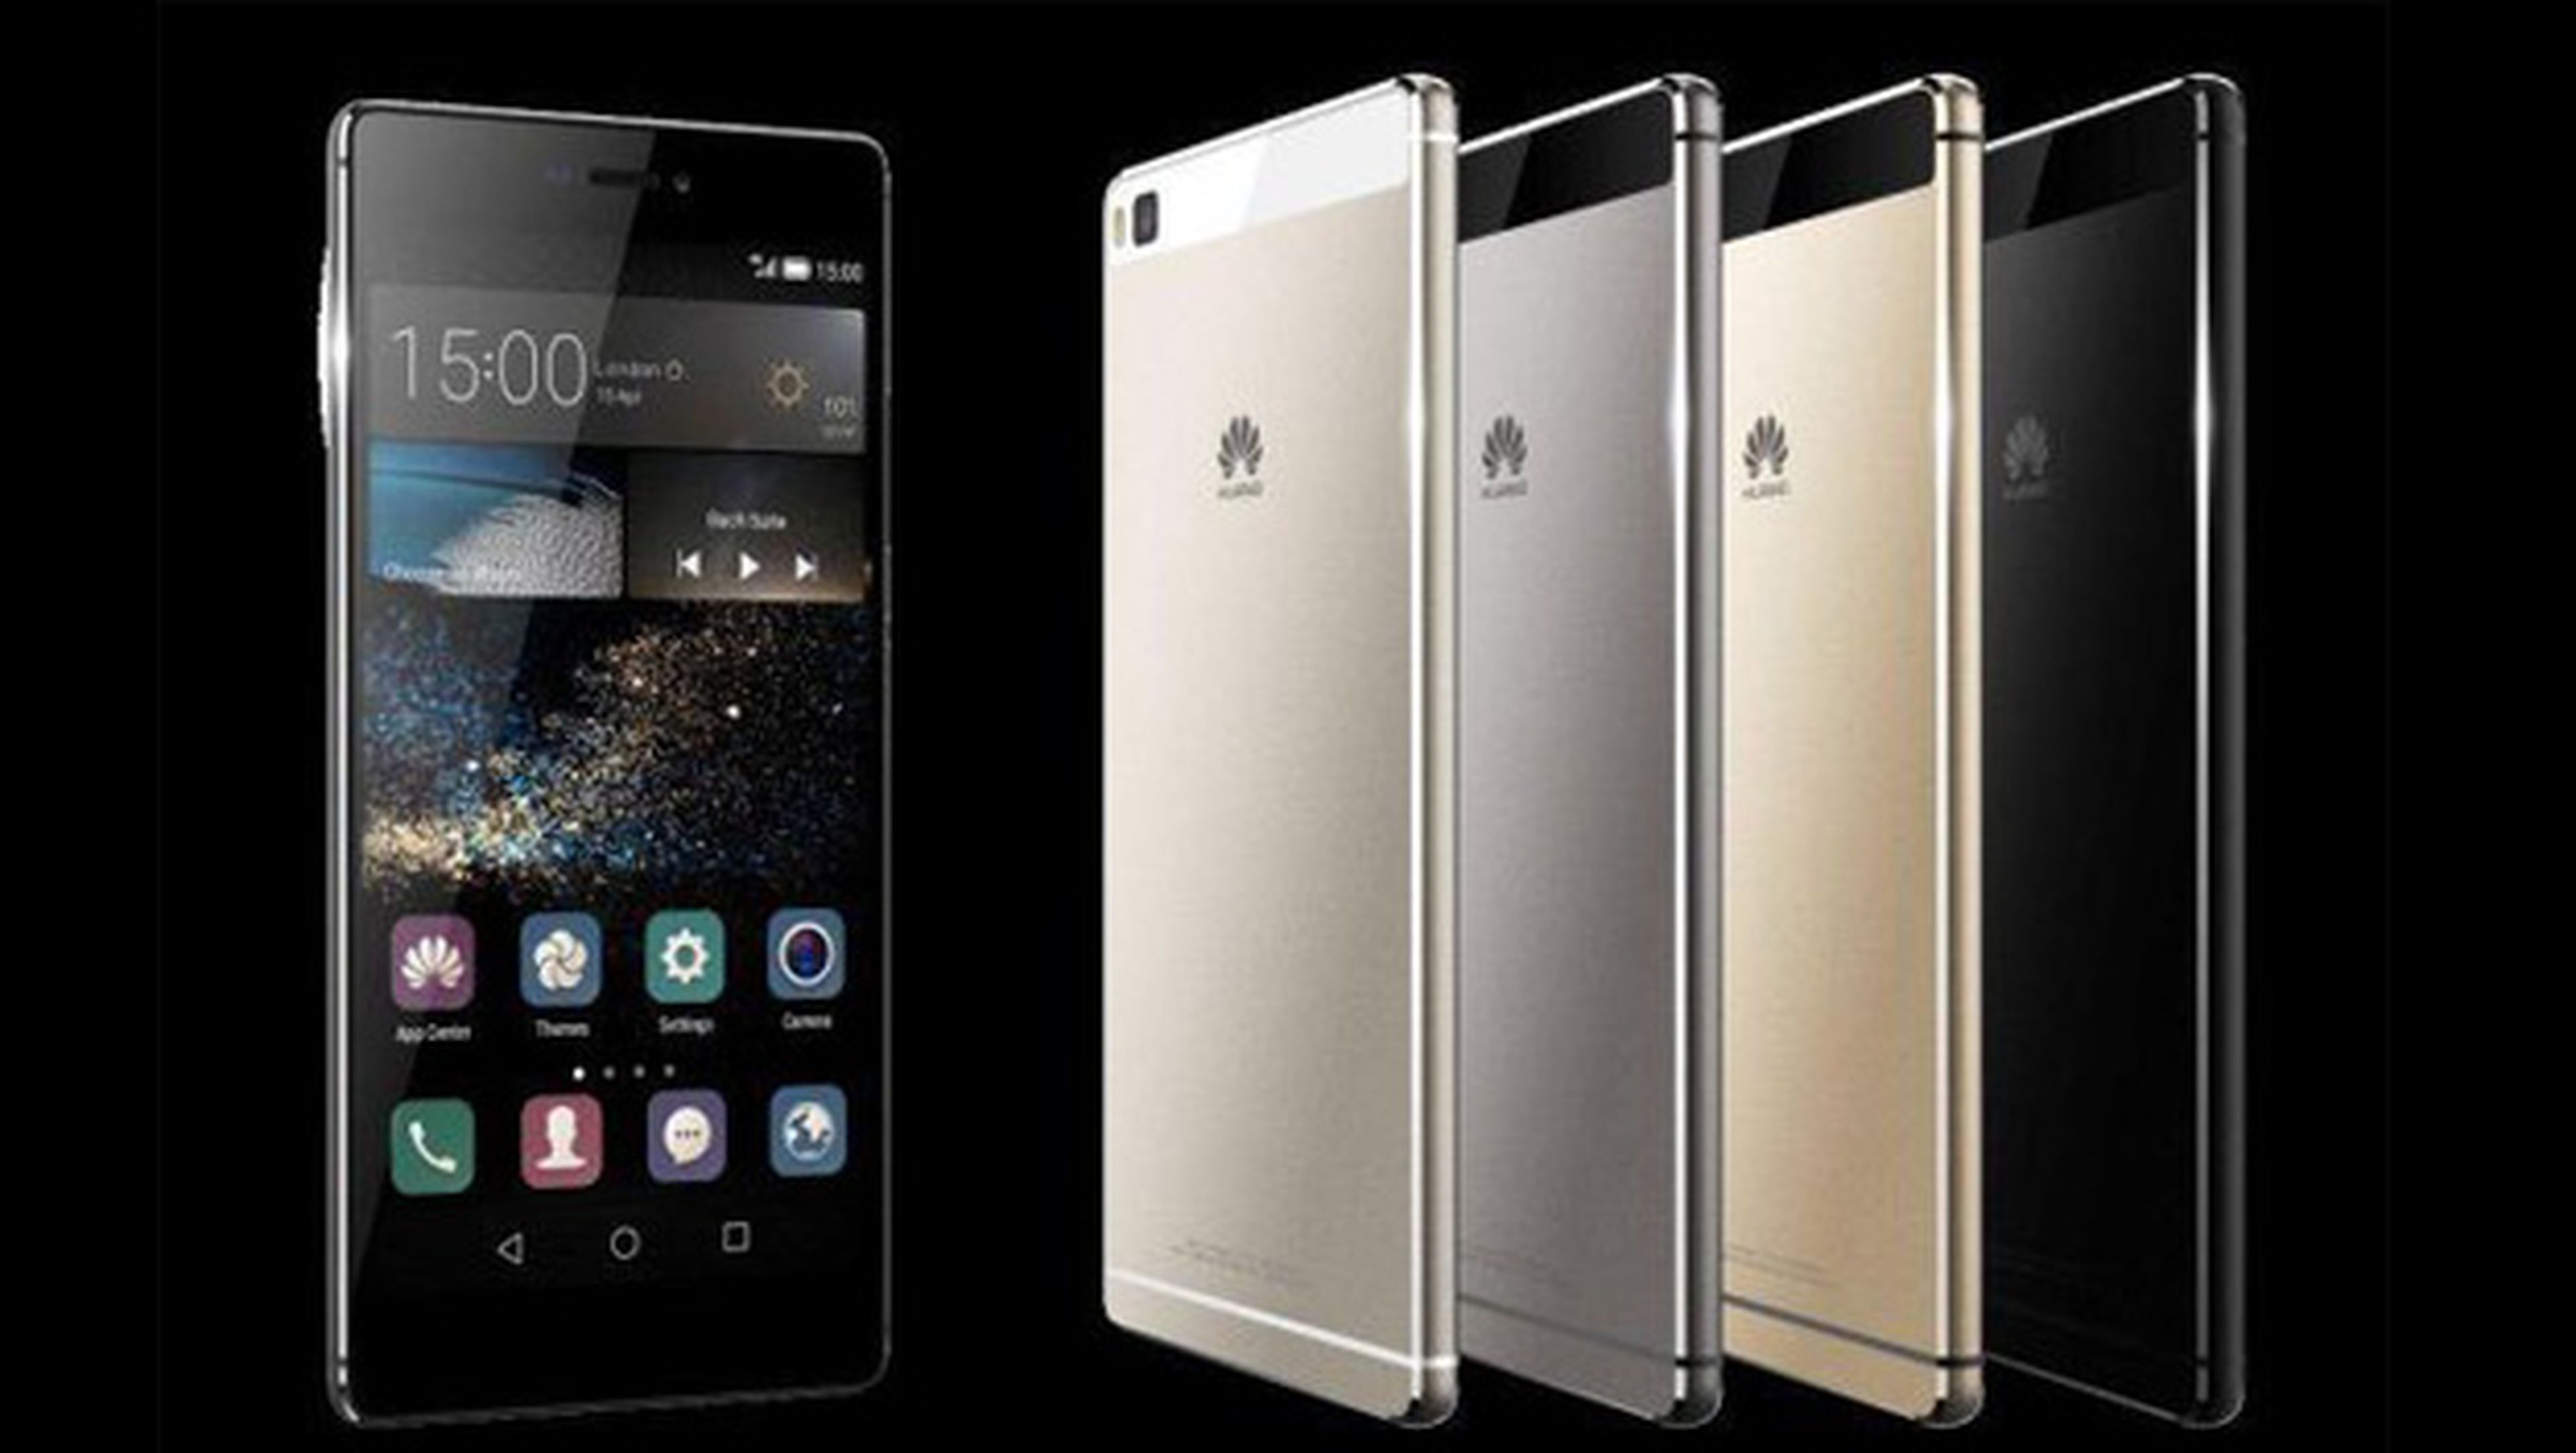 Huawei segundo fabricante smartphones España